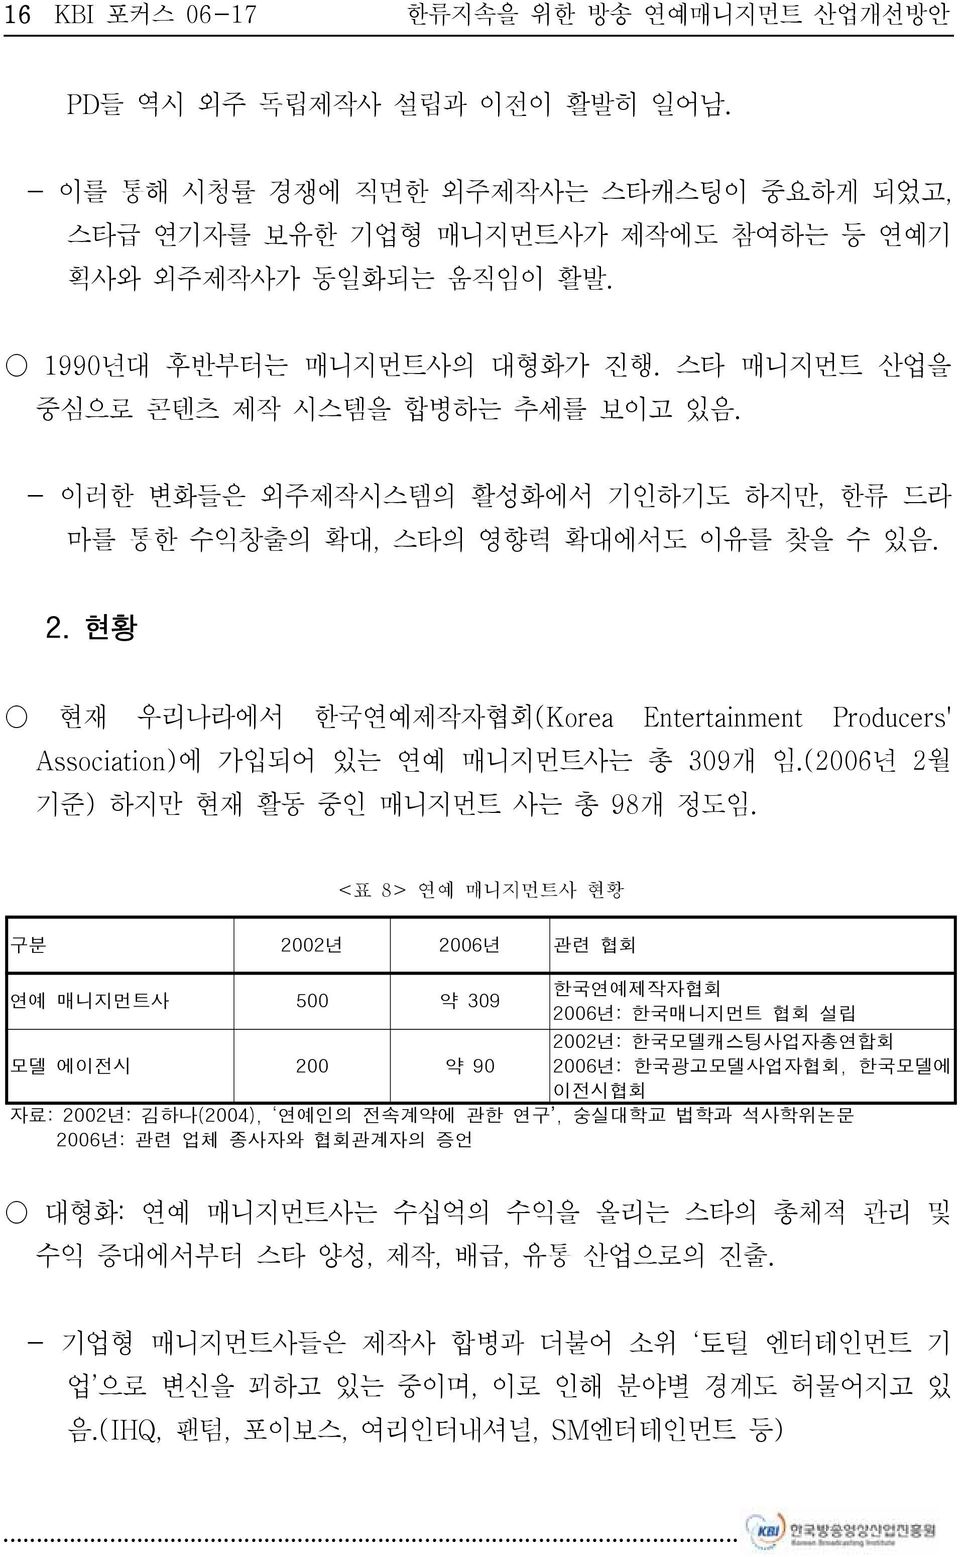 현황 현재 우리나라에서 한국연예제작자협회(Korea Entertainment Producers' Association)에 가입되어 있는 연예 매니지먼트사는 총 309개 임.(2006년 2월 기준) 하지만 현재 활동 중인 매니지먼트 사는 총 98개 정도임.